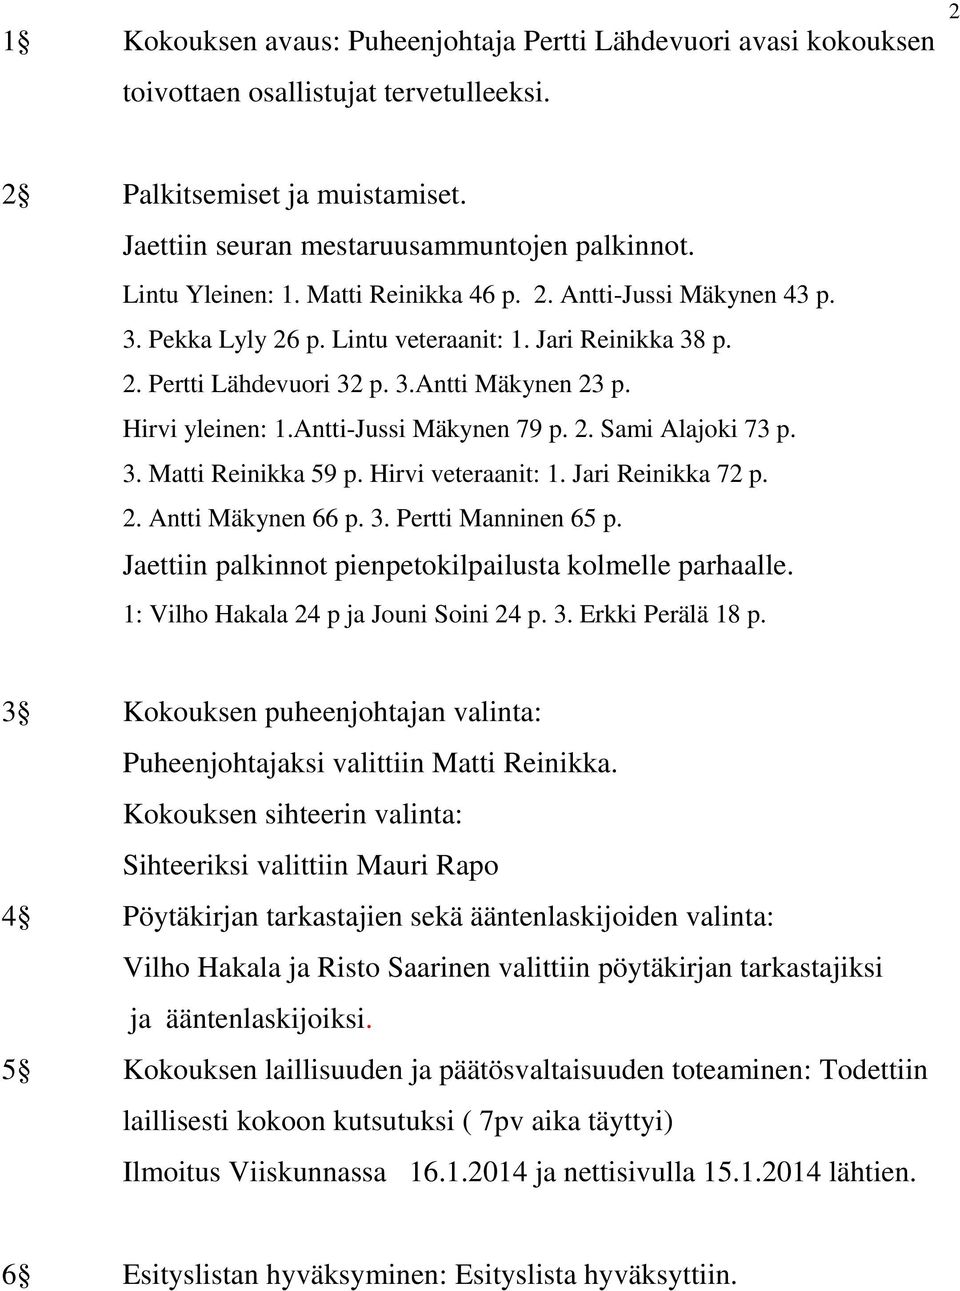 Antti-Jussi Mäkynen 79 p. 2. Sami Alajoki 73 p. 3. Matti Reinikka 59 p. Hirvi veteraanit: 1. Jari Reinikka 72 p. 2. Antti Mäkynen 66 p. 3. Pertti Manninen 65 p.